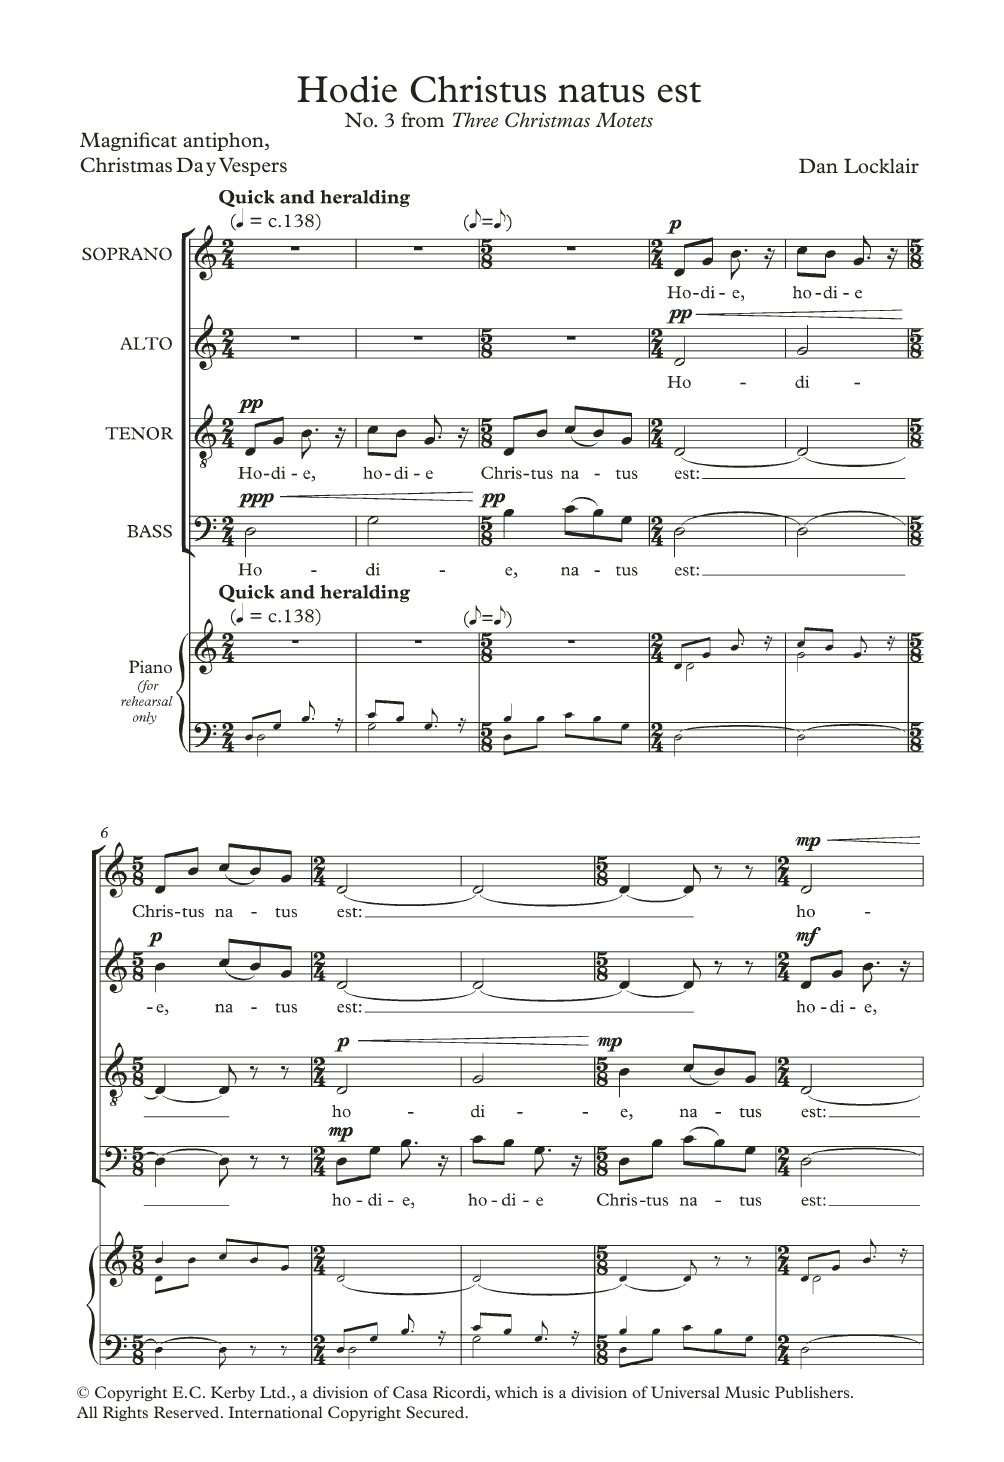 Dan Locklair Hodie Christus Natus Est Sheet Music Notes & Chords for SATB - Download or Print PDF